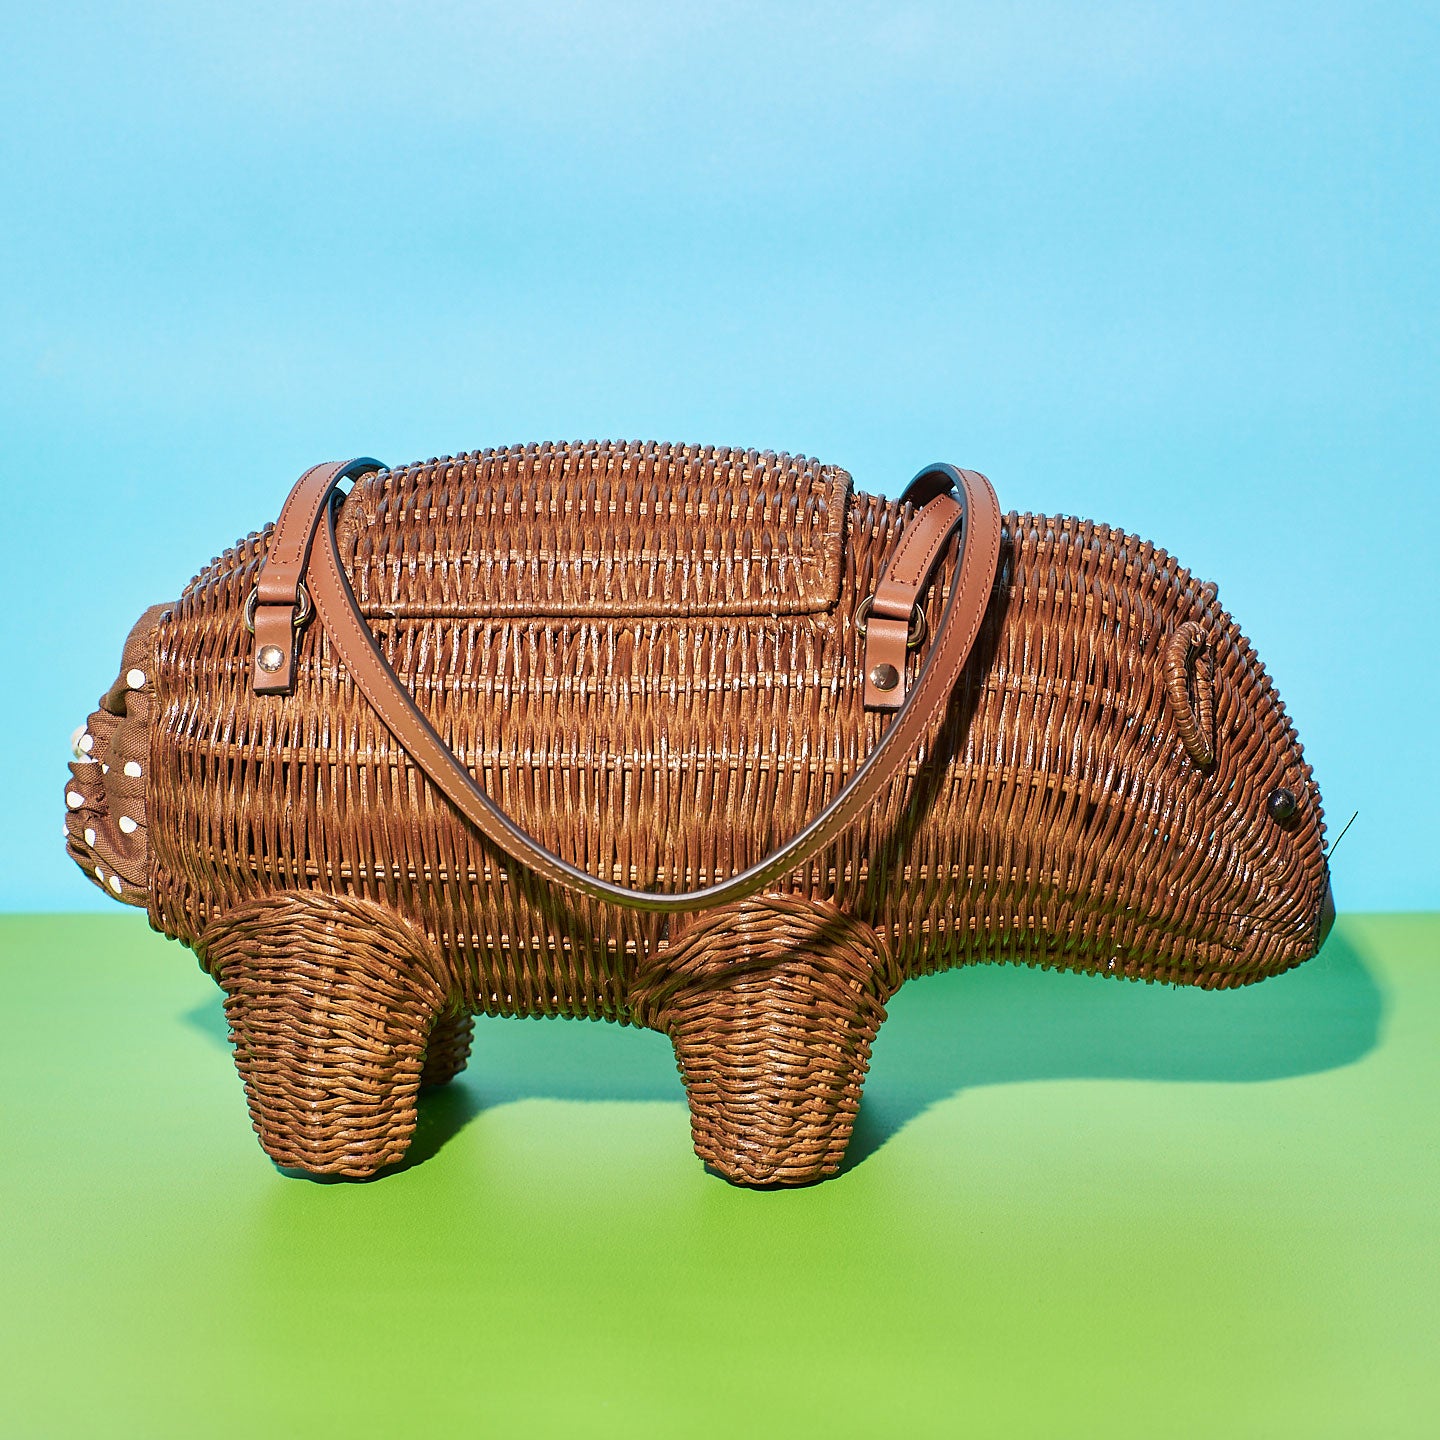 https://wickerdarling.com/cdn/shop/products/Wicker_Darling_cutest-wombat-bag-australiana-handbag1.jpg?v=1644236418